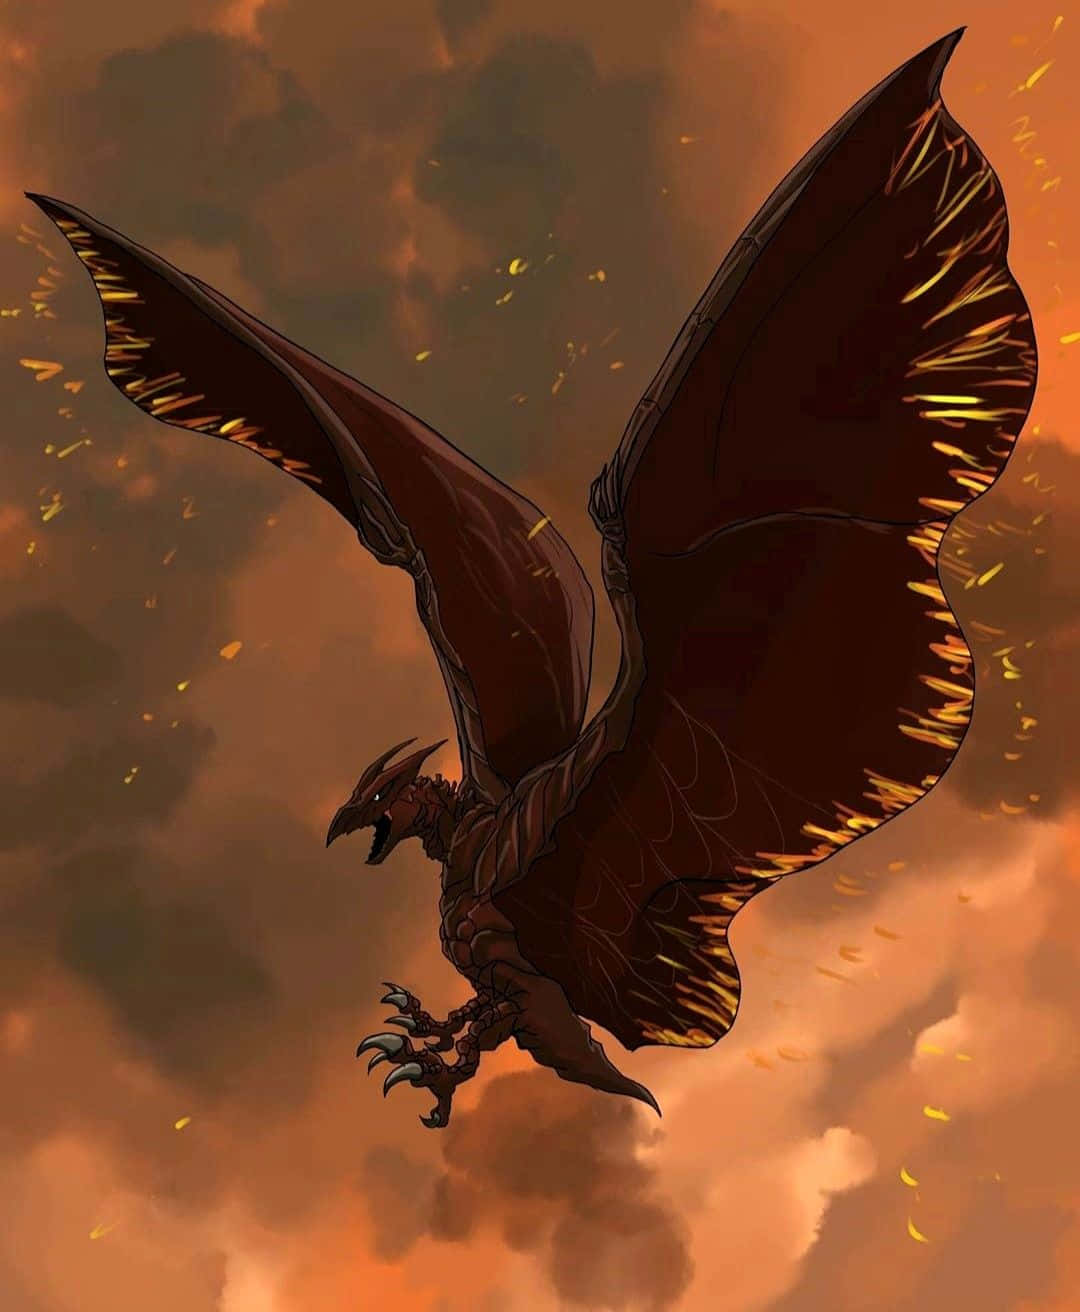 Einrodan, Ein Beeindruckender Und Imposanter Vogelartiger Kaiju Aus Dem Toho Kaiju Universum, Schwebt Majestätisch Am Himmel. Wallpaper